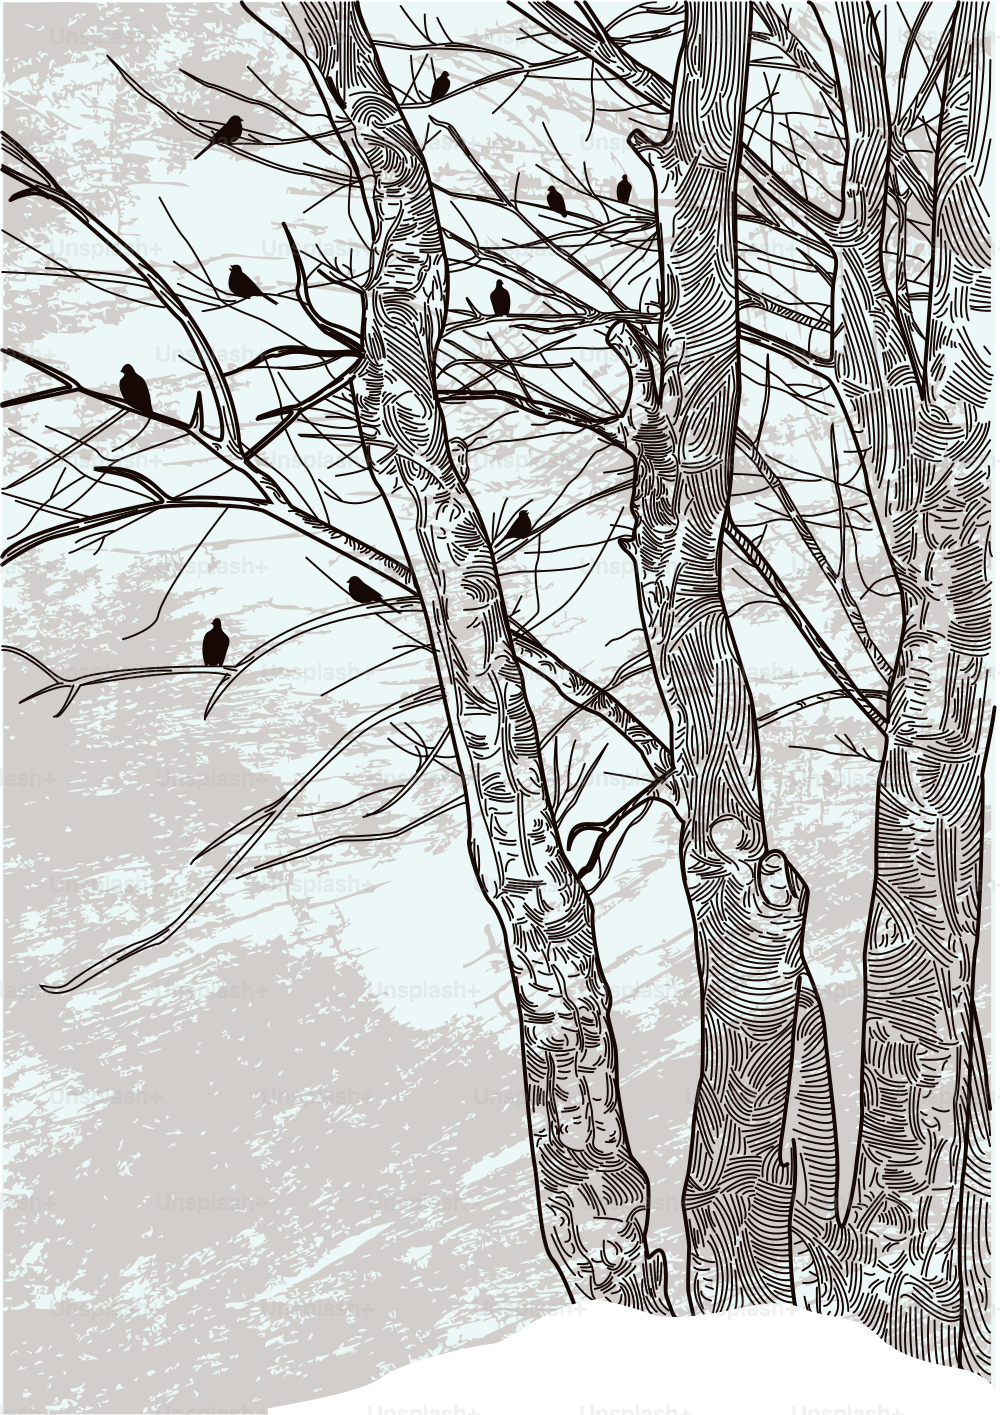 황량한 겨울 나무의 업데이트된 그림입니다.